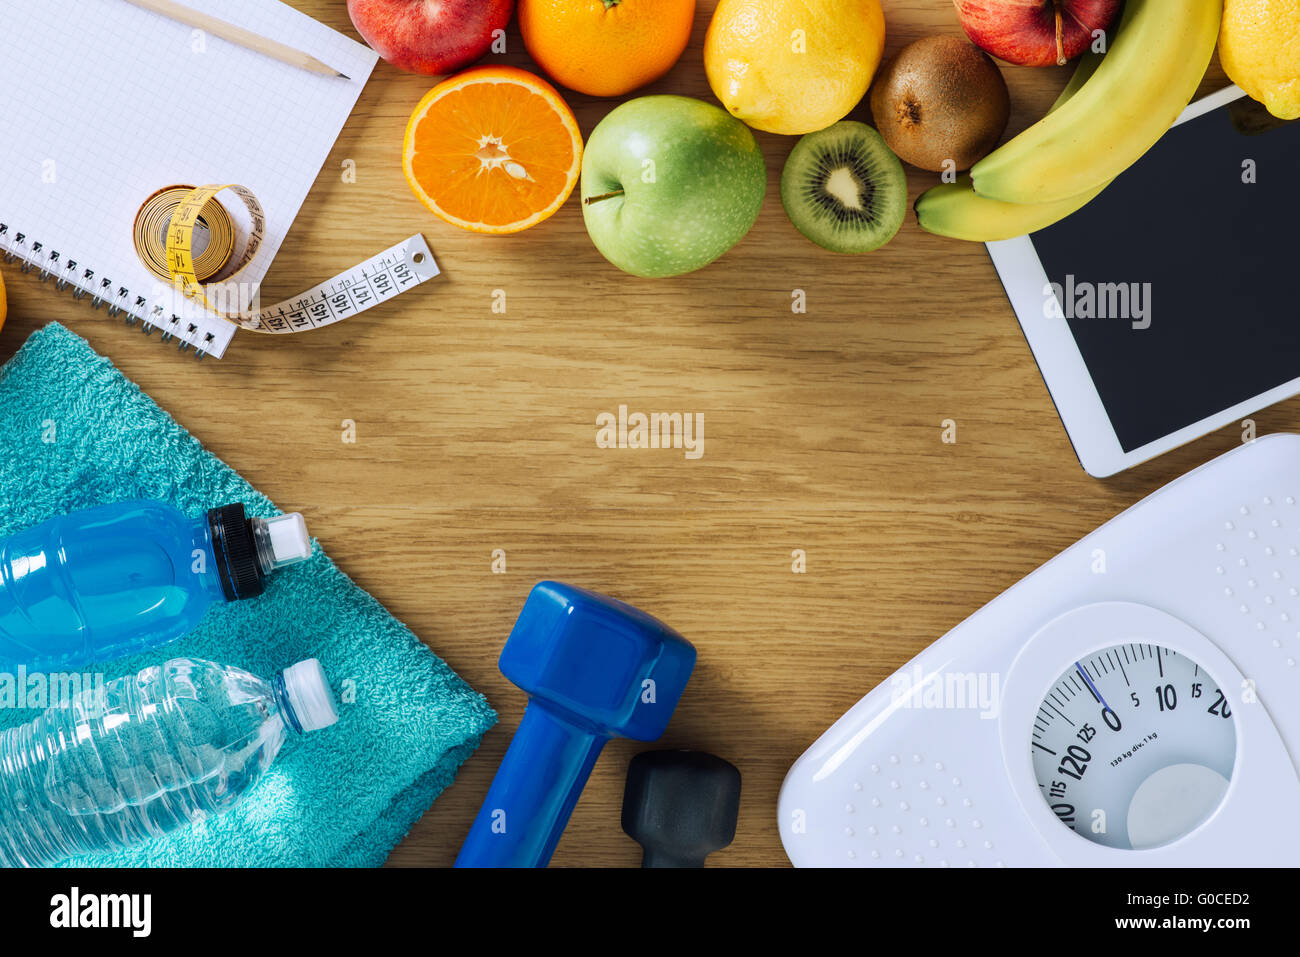 Fitness e perdita di peso concetto, manubri, scala bianca, asciugamani, frutta, metro a nastro e tavoletta digitale su un tavolo di legno Foto Stock